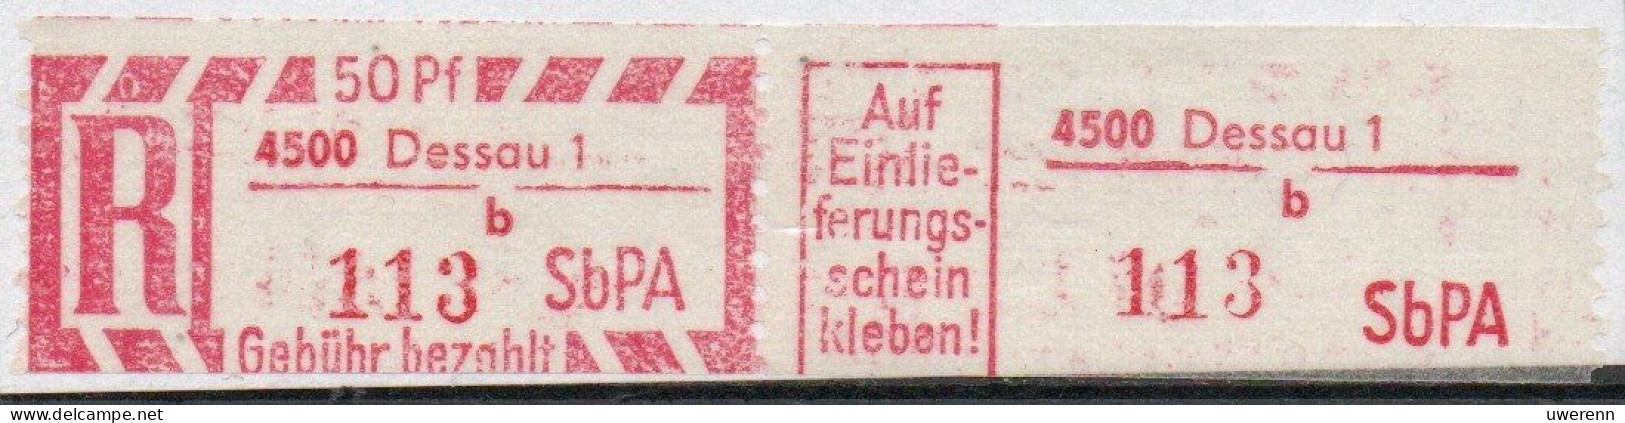 DDR Einschreibemarke Dessau SbPA Postfrisch, EM2F-4500-1b(4) RU (b) Zh - Aangetekende Etiketten